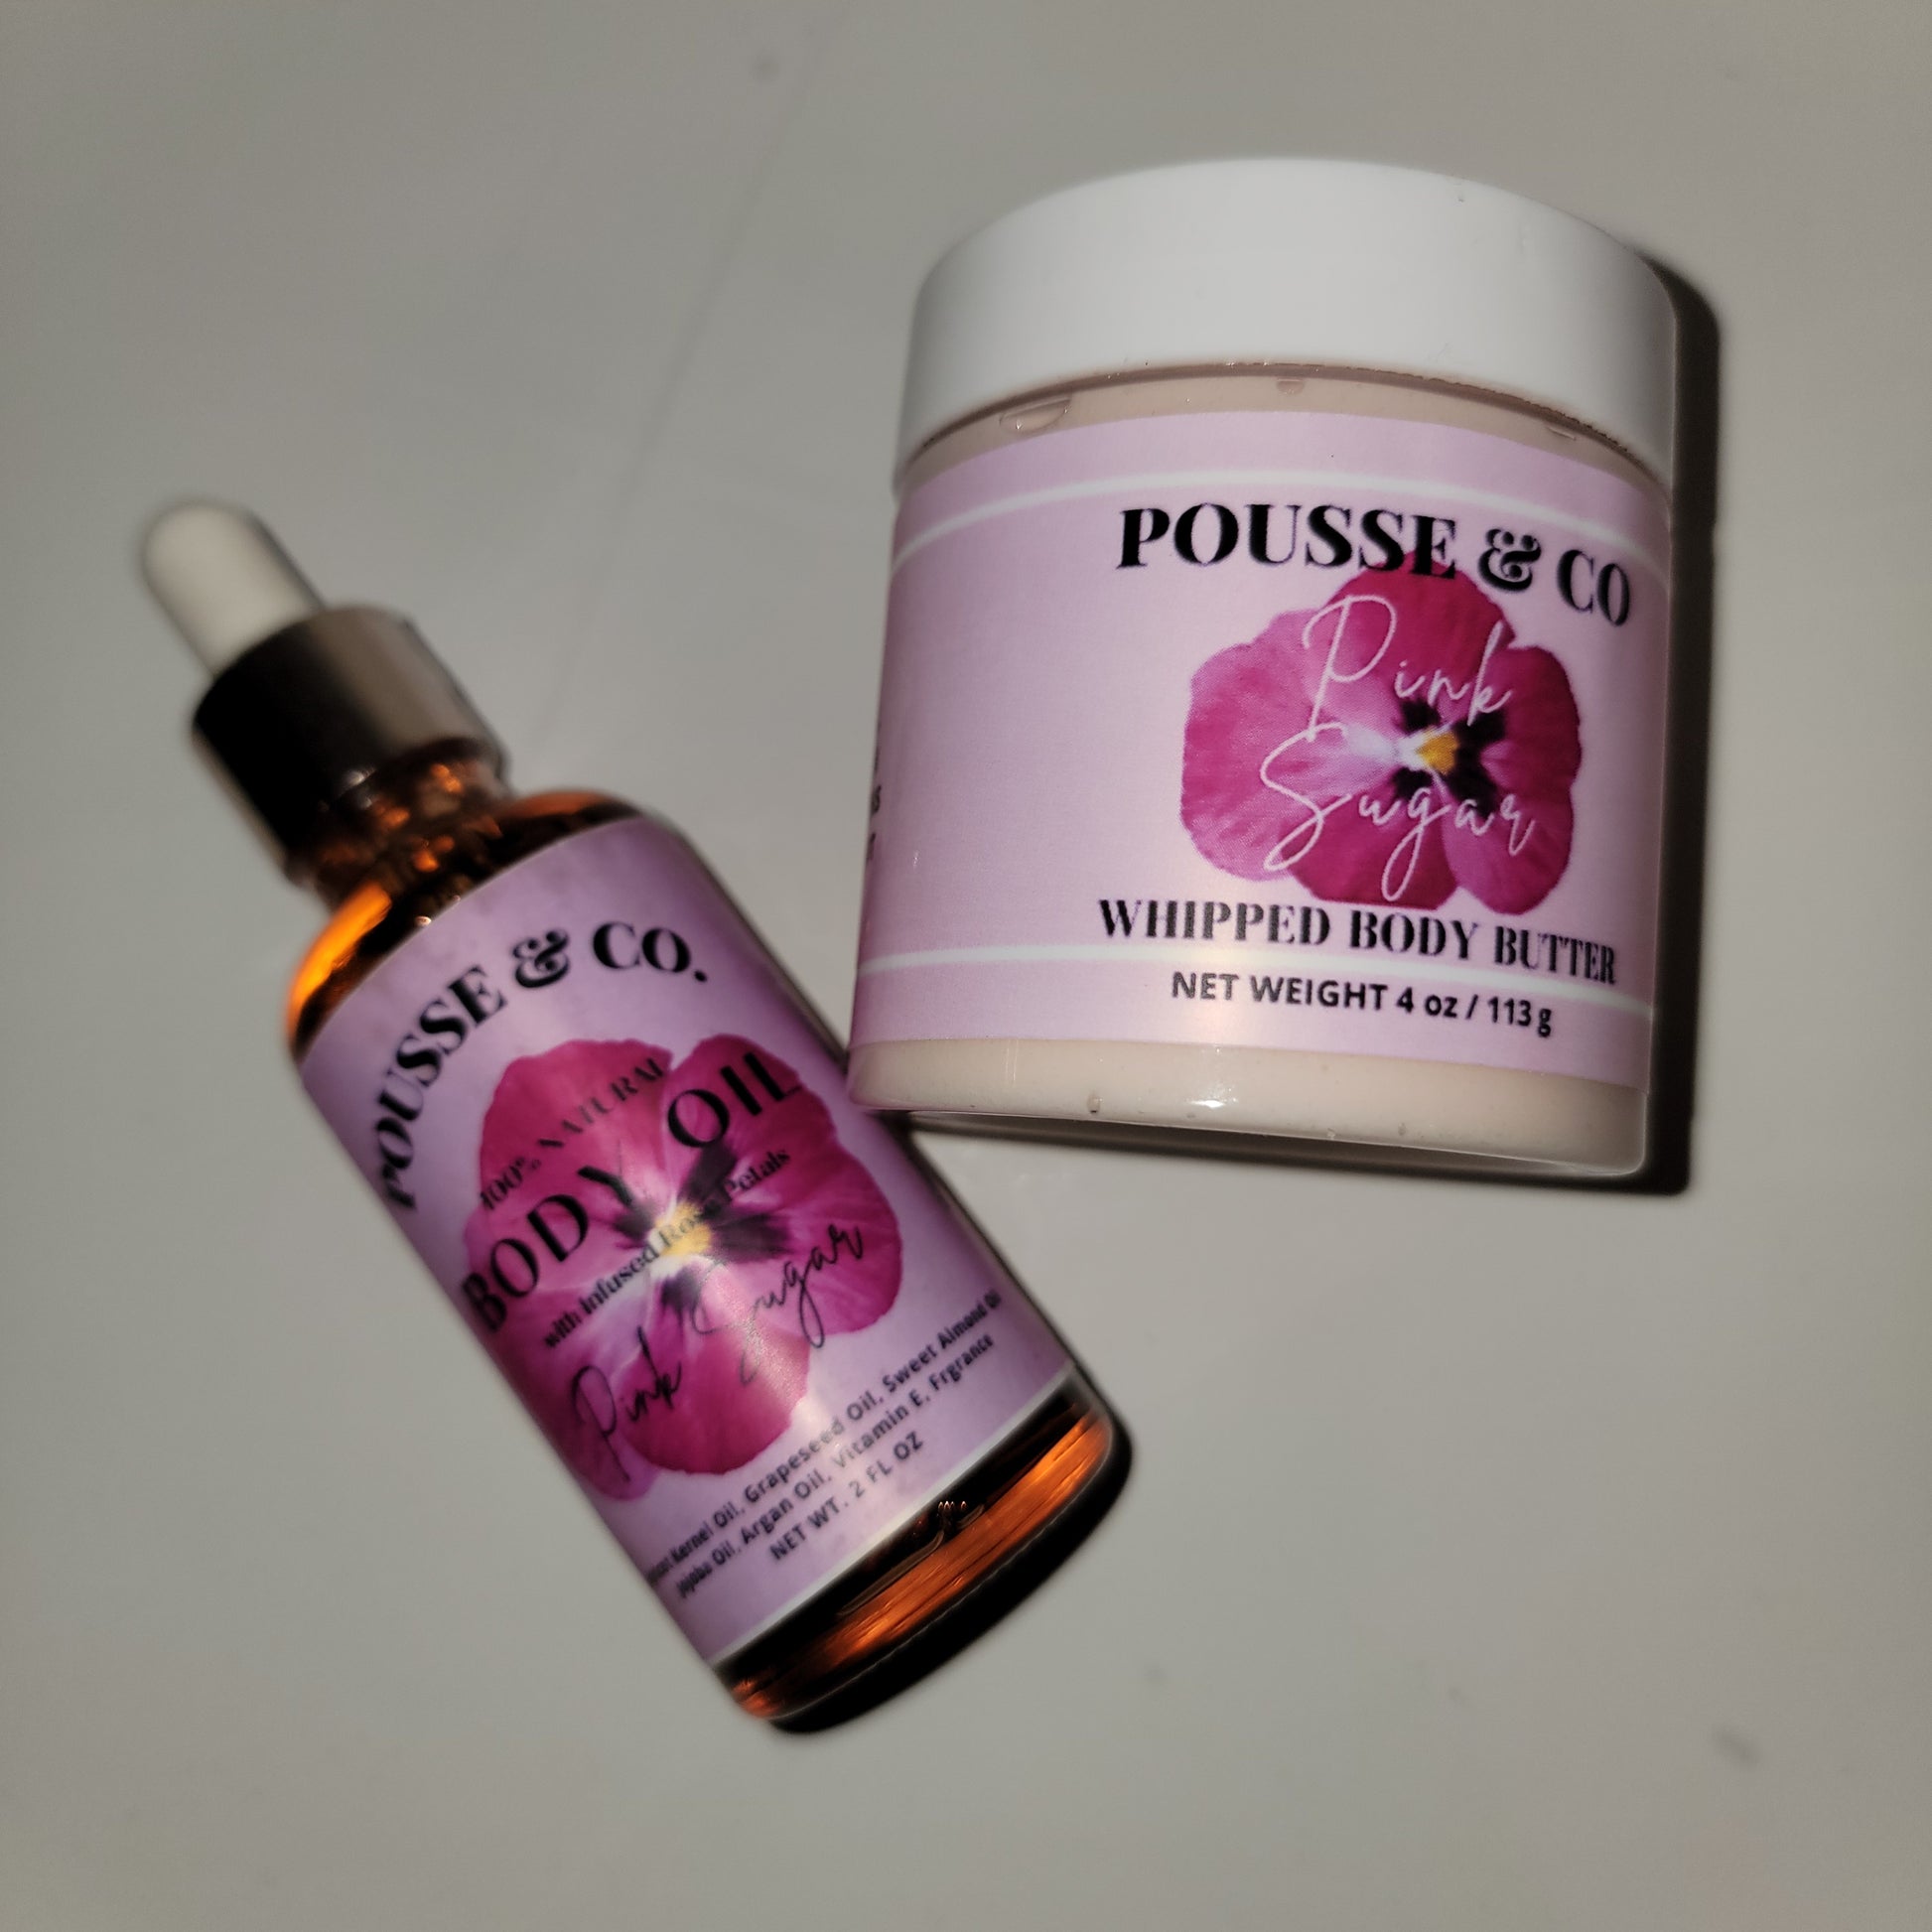 Pink Sugar Body Oil 4oz